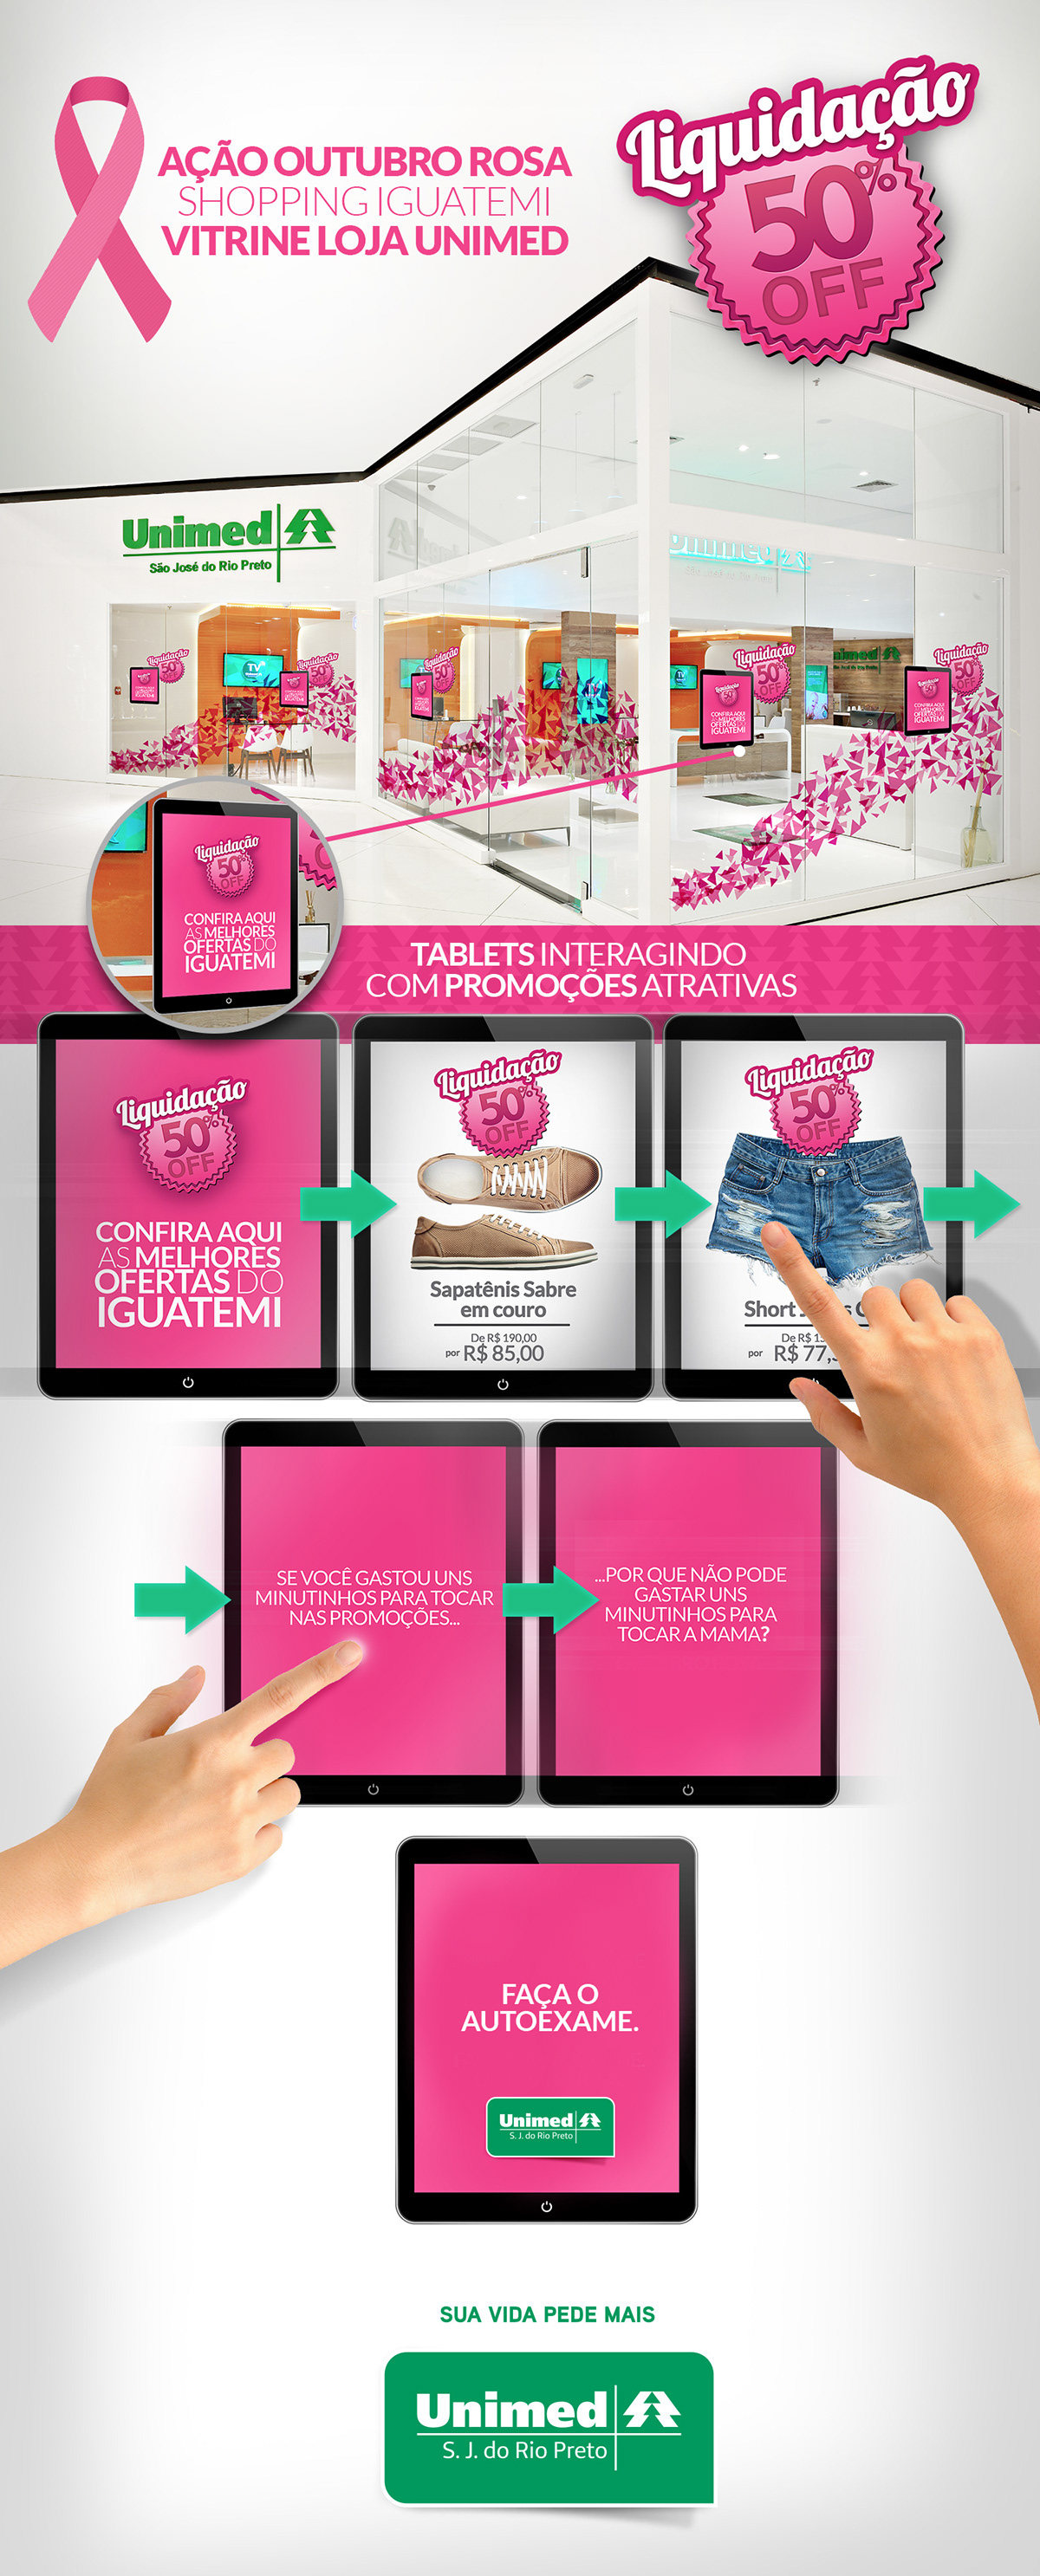 ação outubro rosa saúde Propaganda publicidade Publicidade e Propaganda Redação redator publicitário rosa cancer de mama autoexame mulher